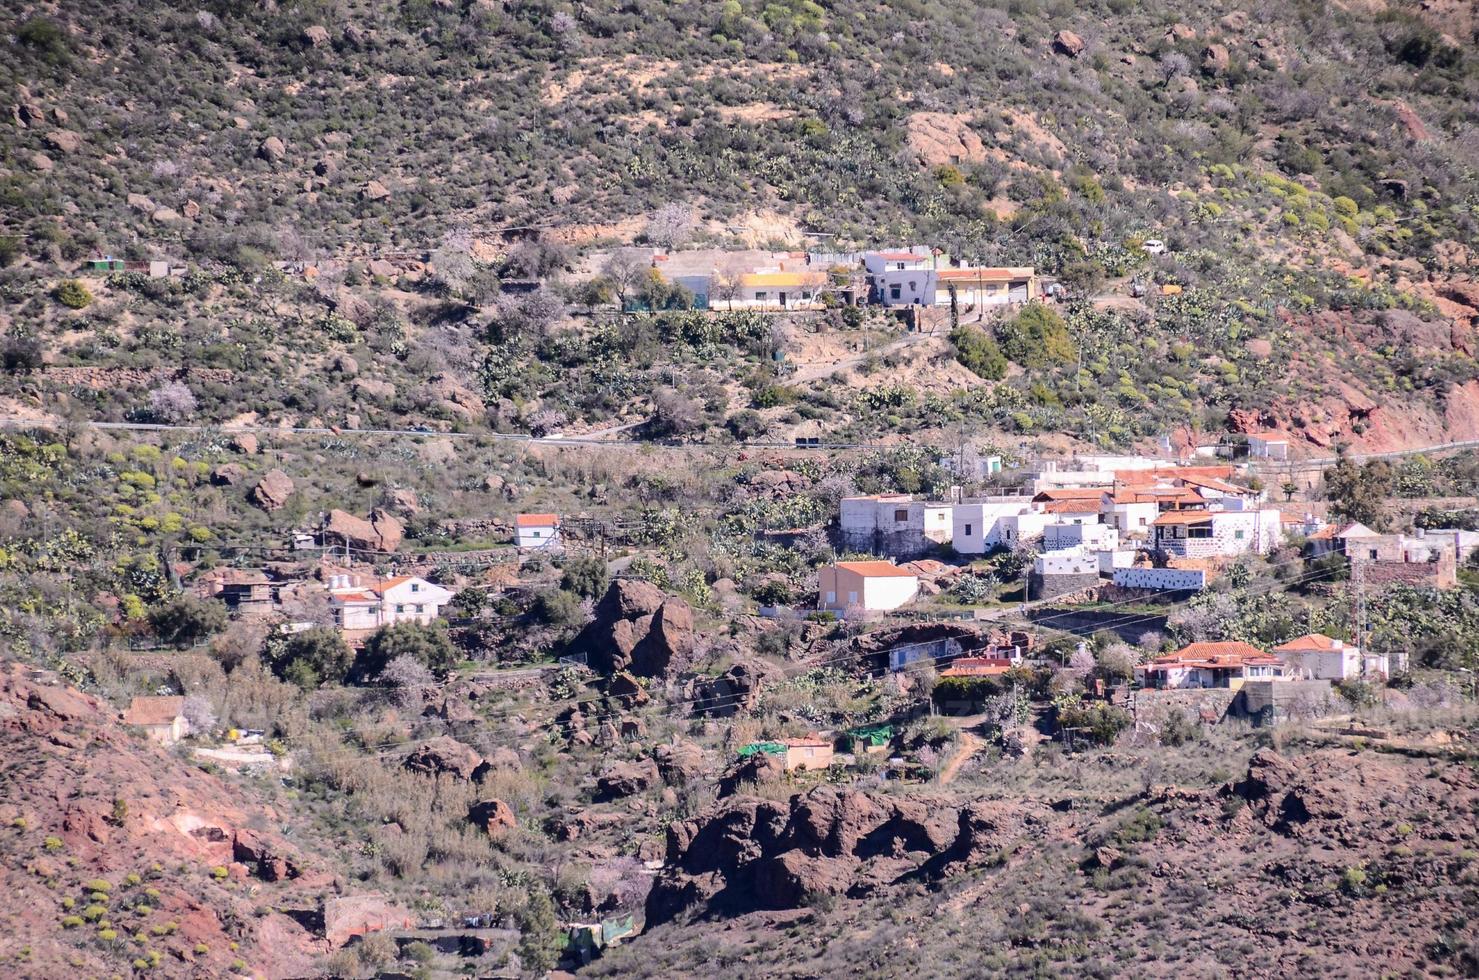 panoramico paesaggio su tenerife, canarino isole, Spagna foto